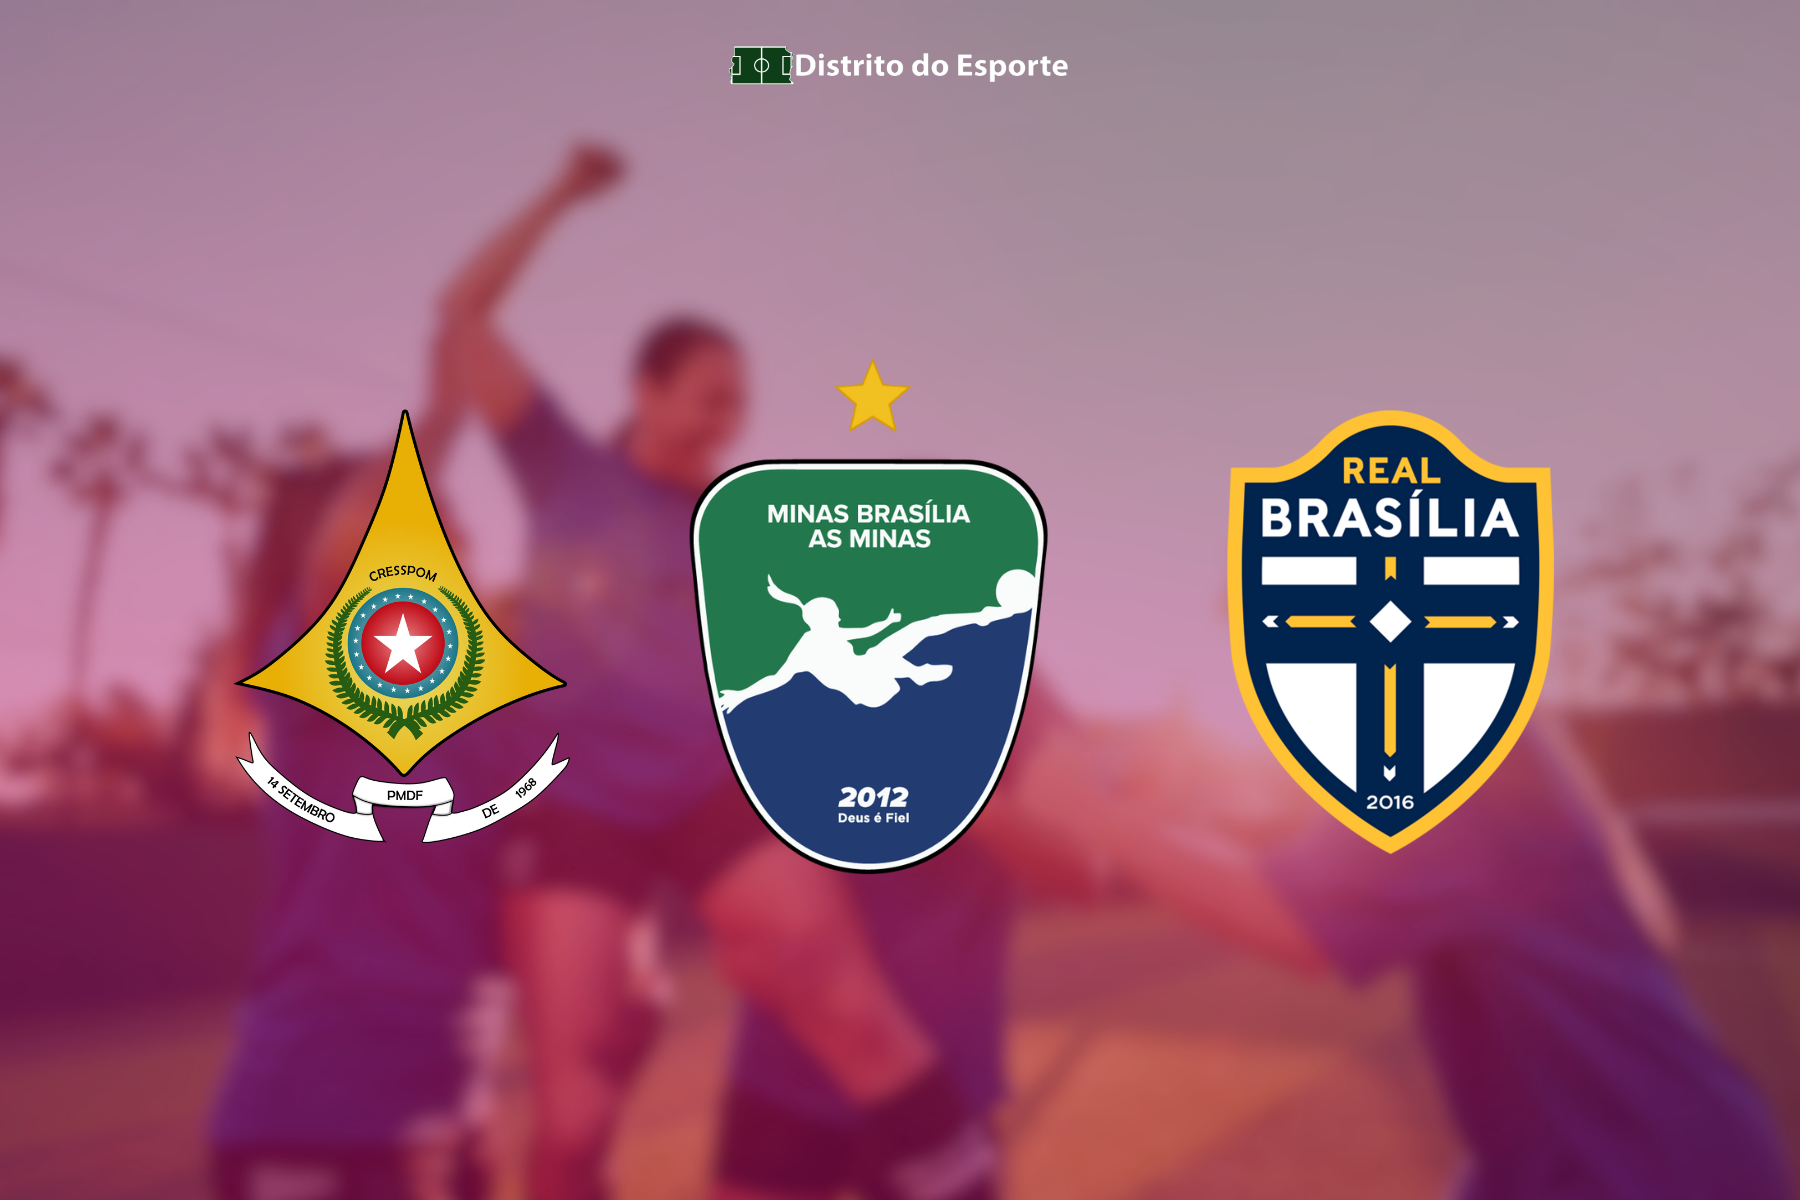 Representantes do Distrito Federal no Campeonato Brasileiro Feminino Sub-17